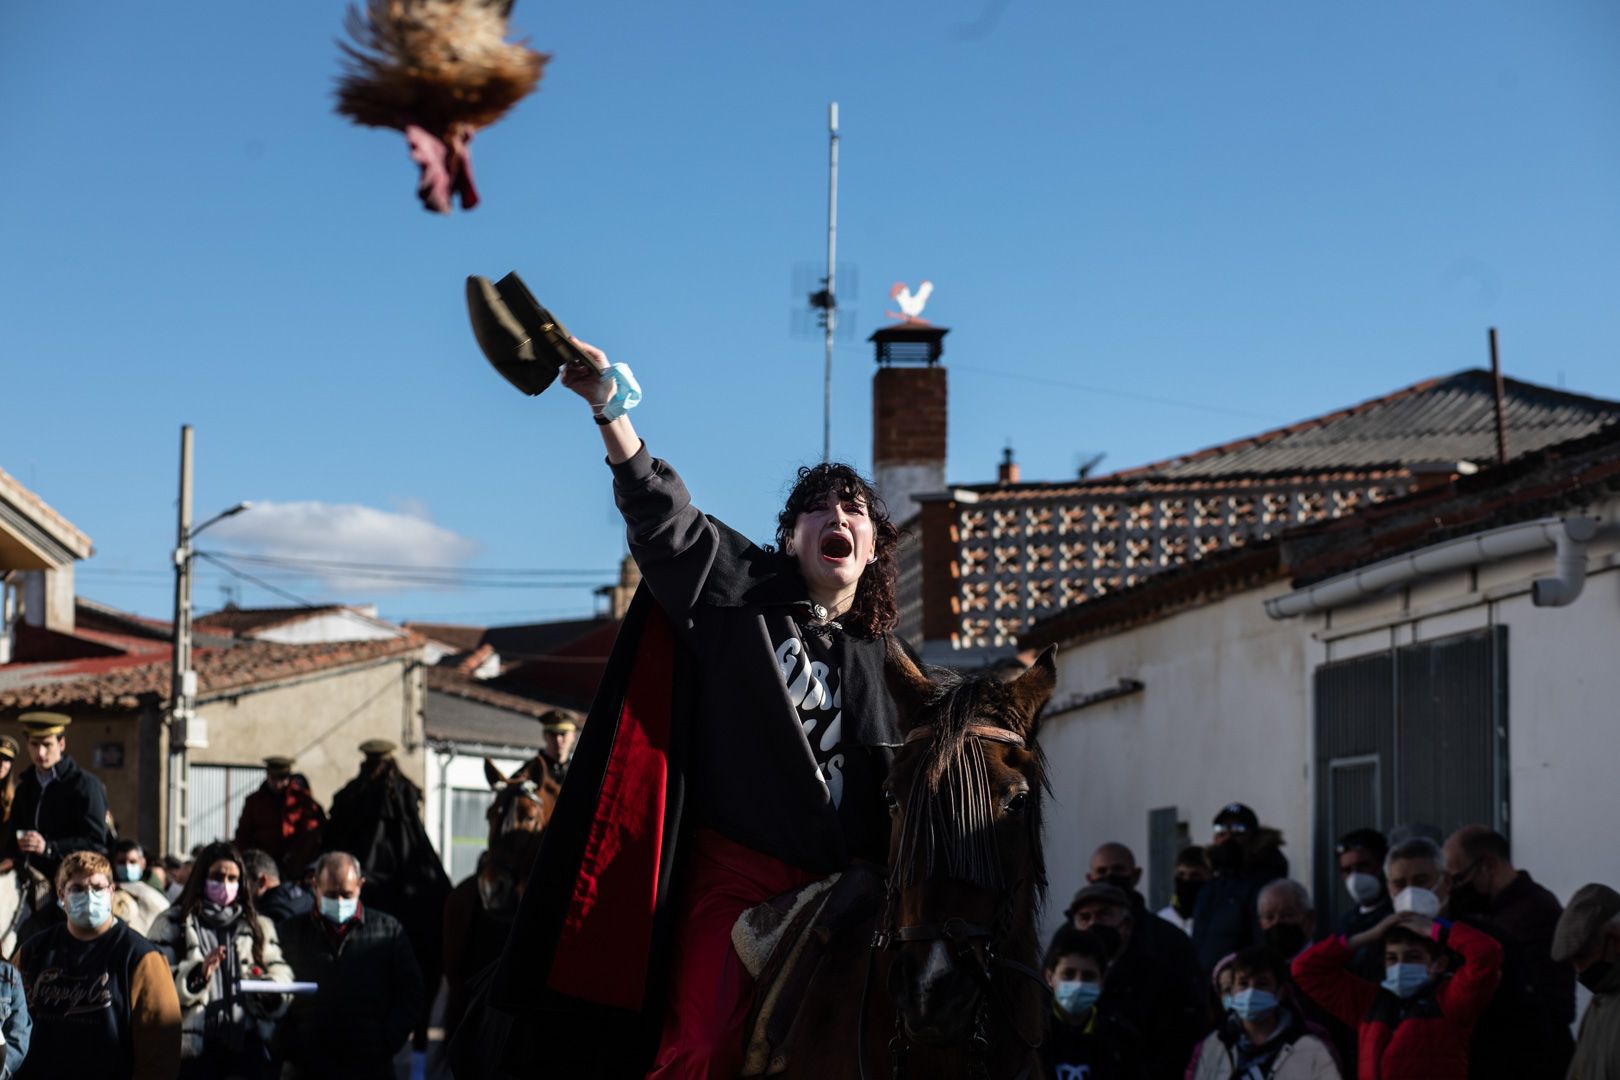 GALERÍA | La Carrera del Gallo del Pego, en imágenes